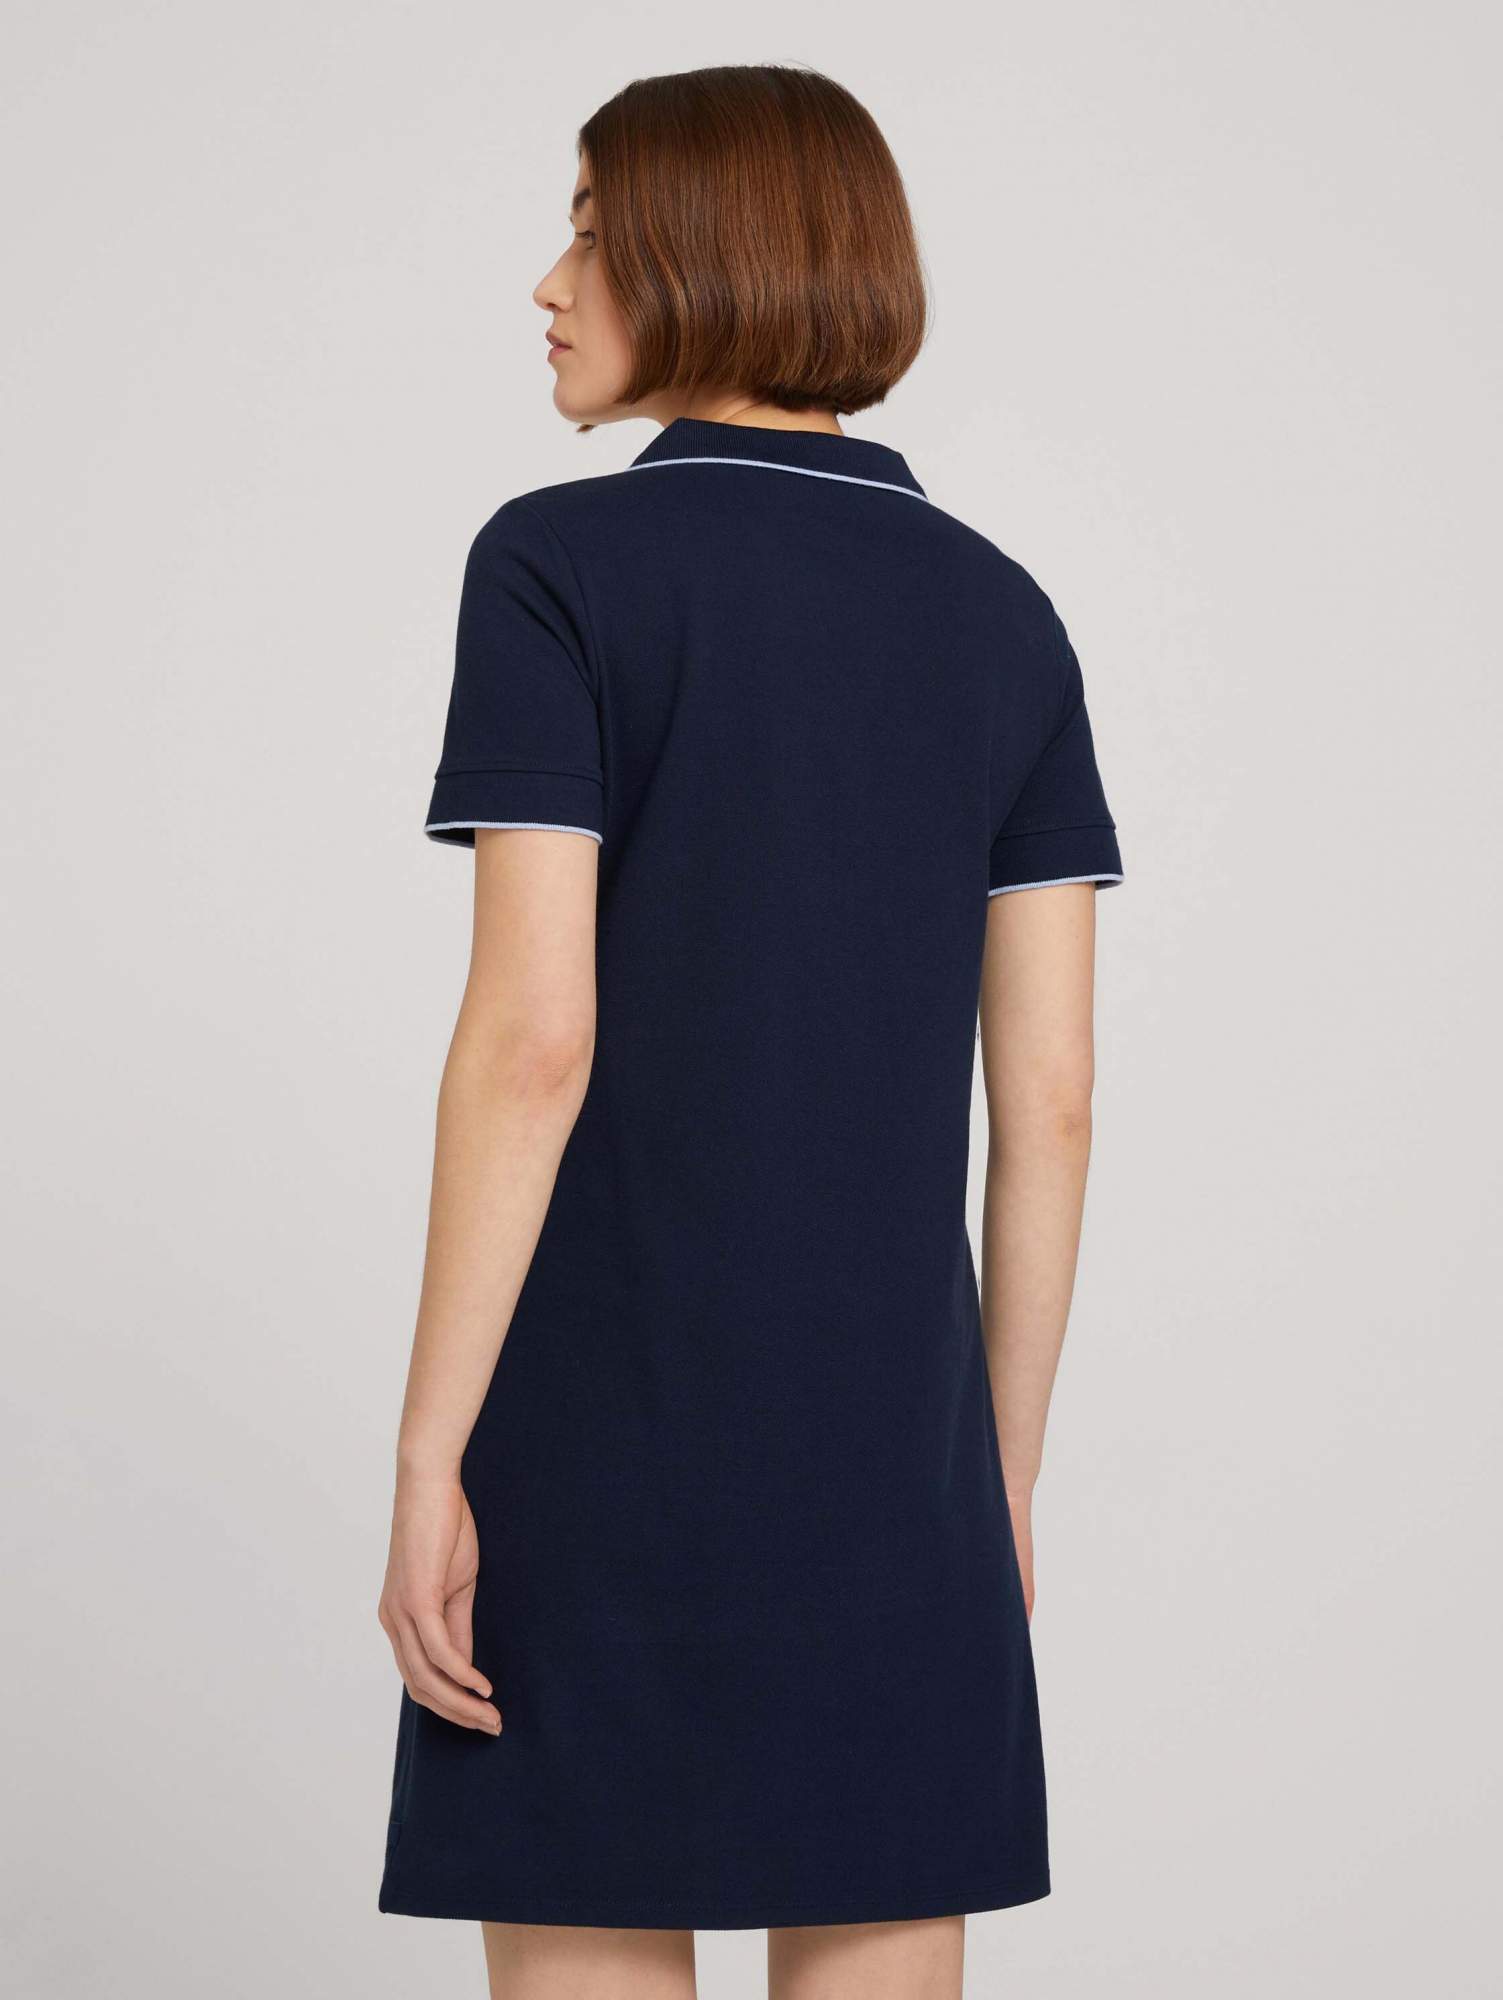 Платье женское TOM TAILOR 1030959 синее XL